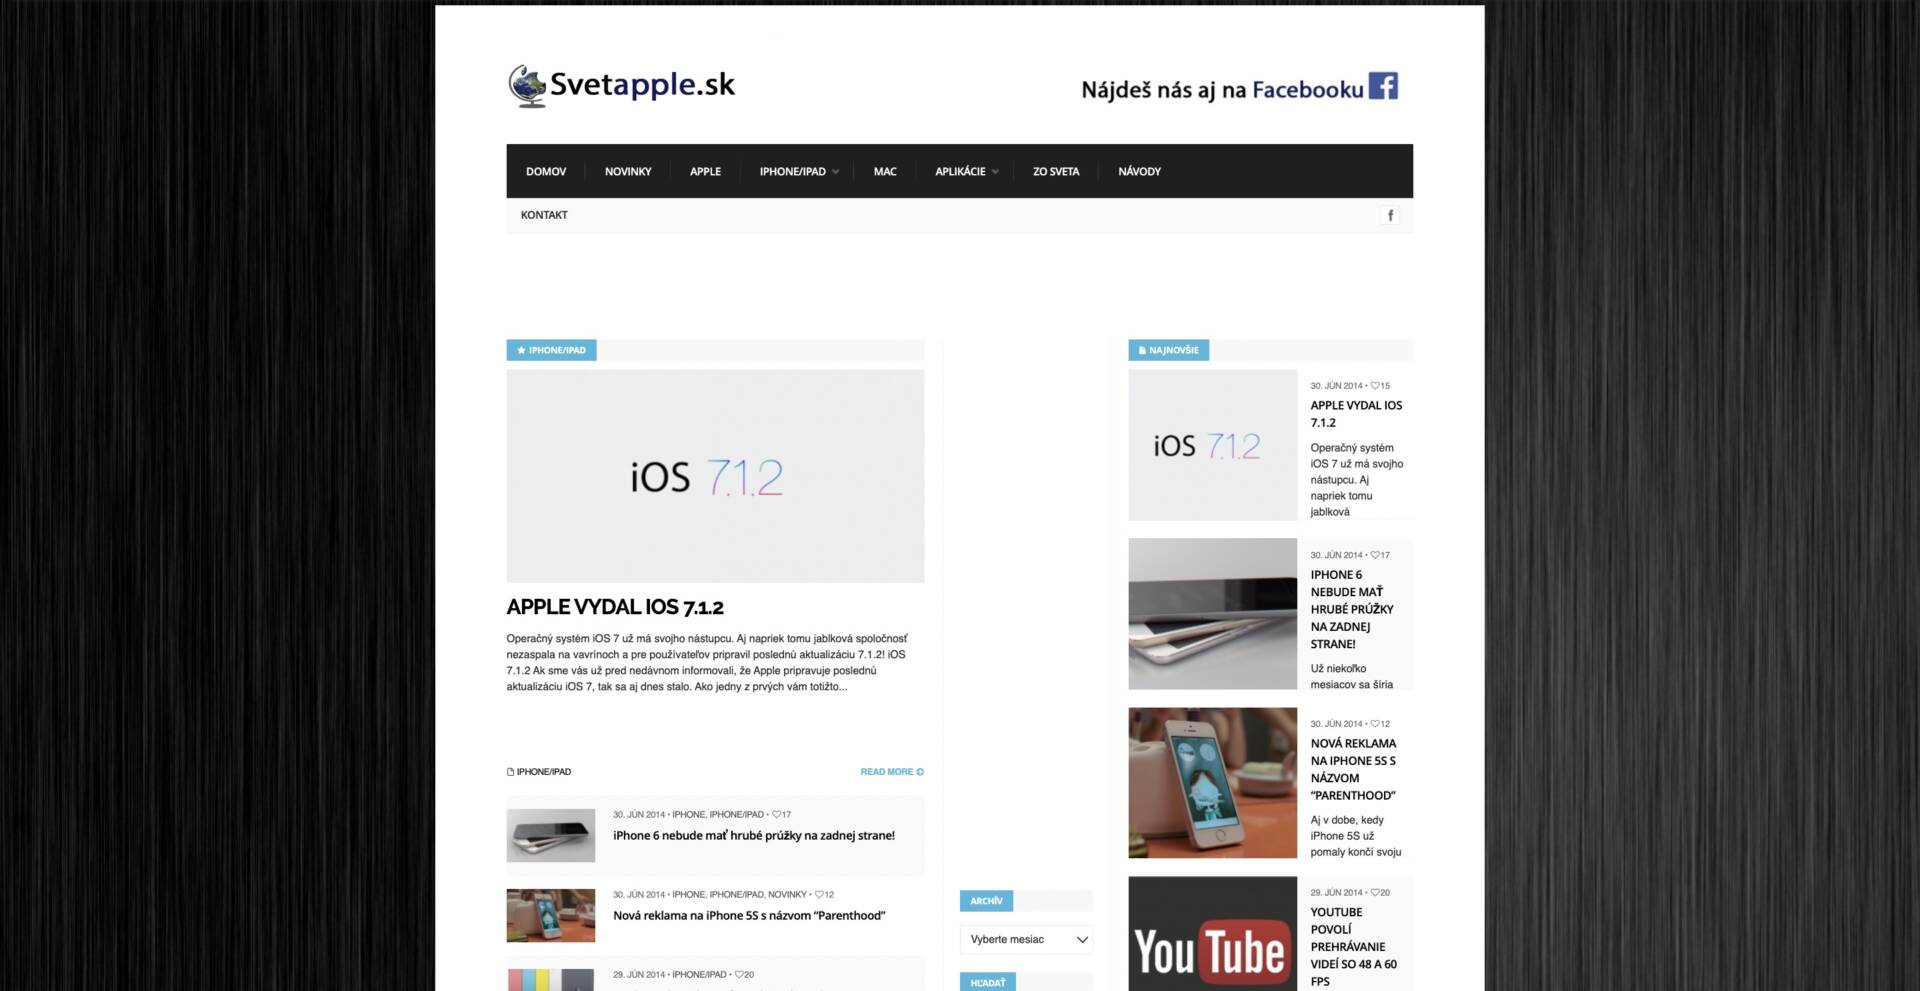 Prvá verzia internetovej stránky www.svetapple.sk, ktorá vznikla začiatkom roka 2014 ako hobby projekt. 